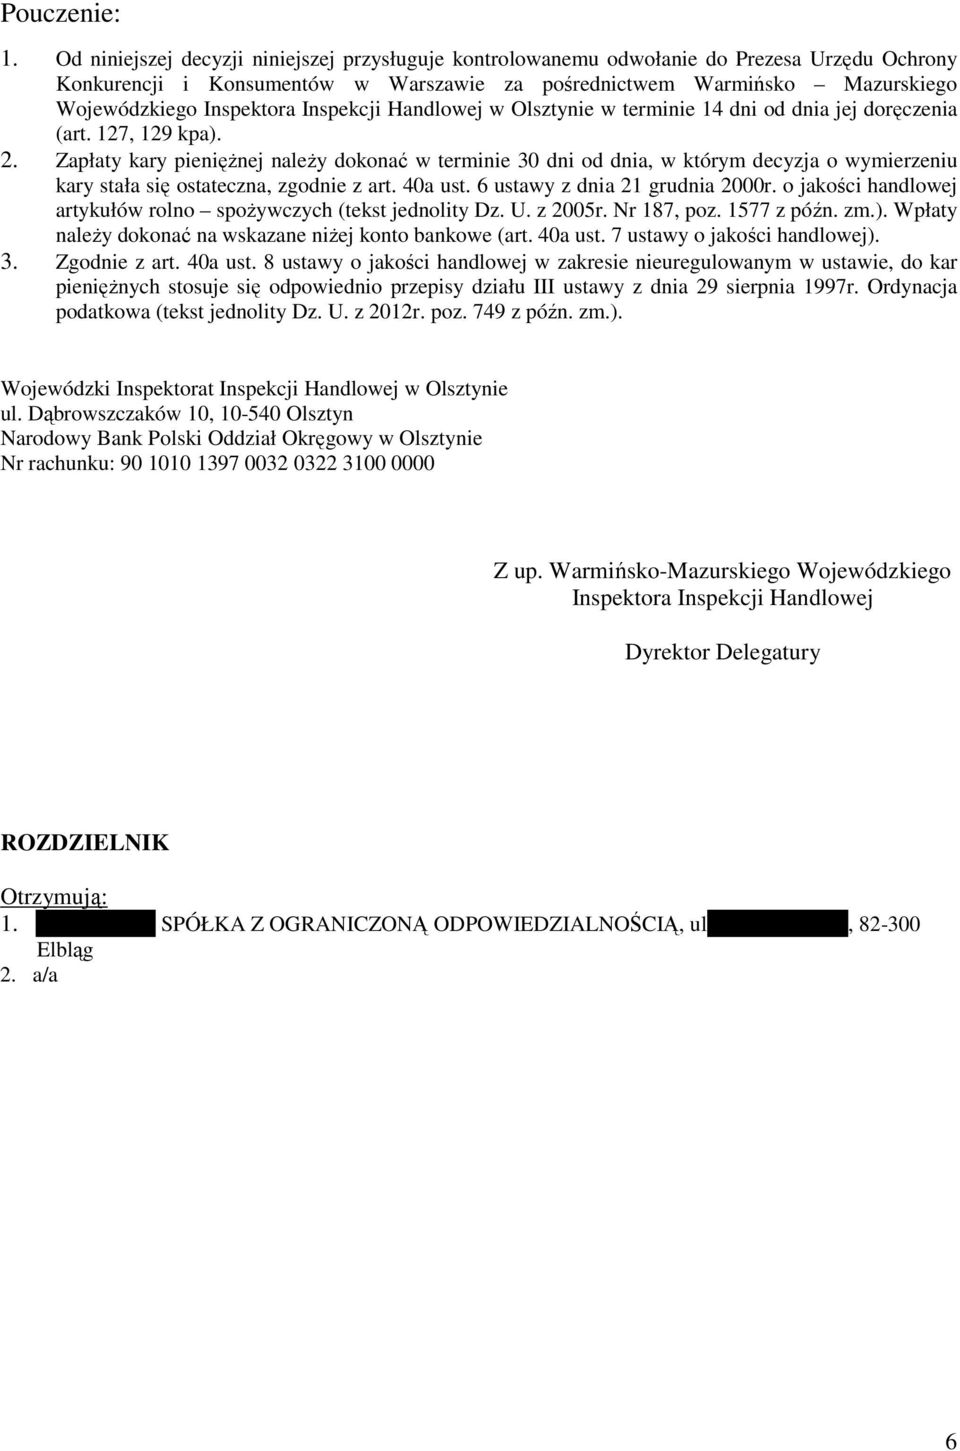 Inspekcji Handlowej w Olsztynie w terminie 14 dni od dnia jej doręczenia (art. 127, 129 kpa). 2.